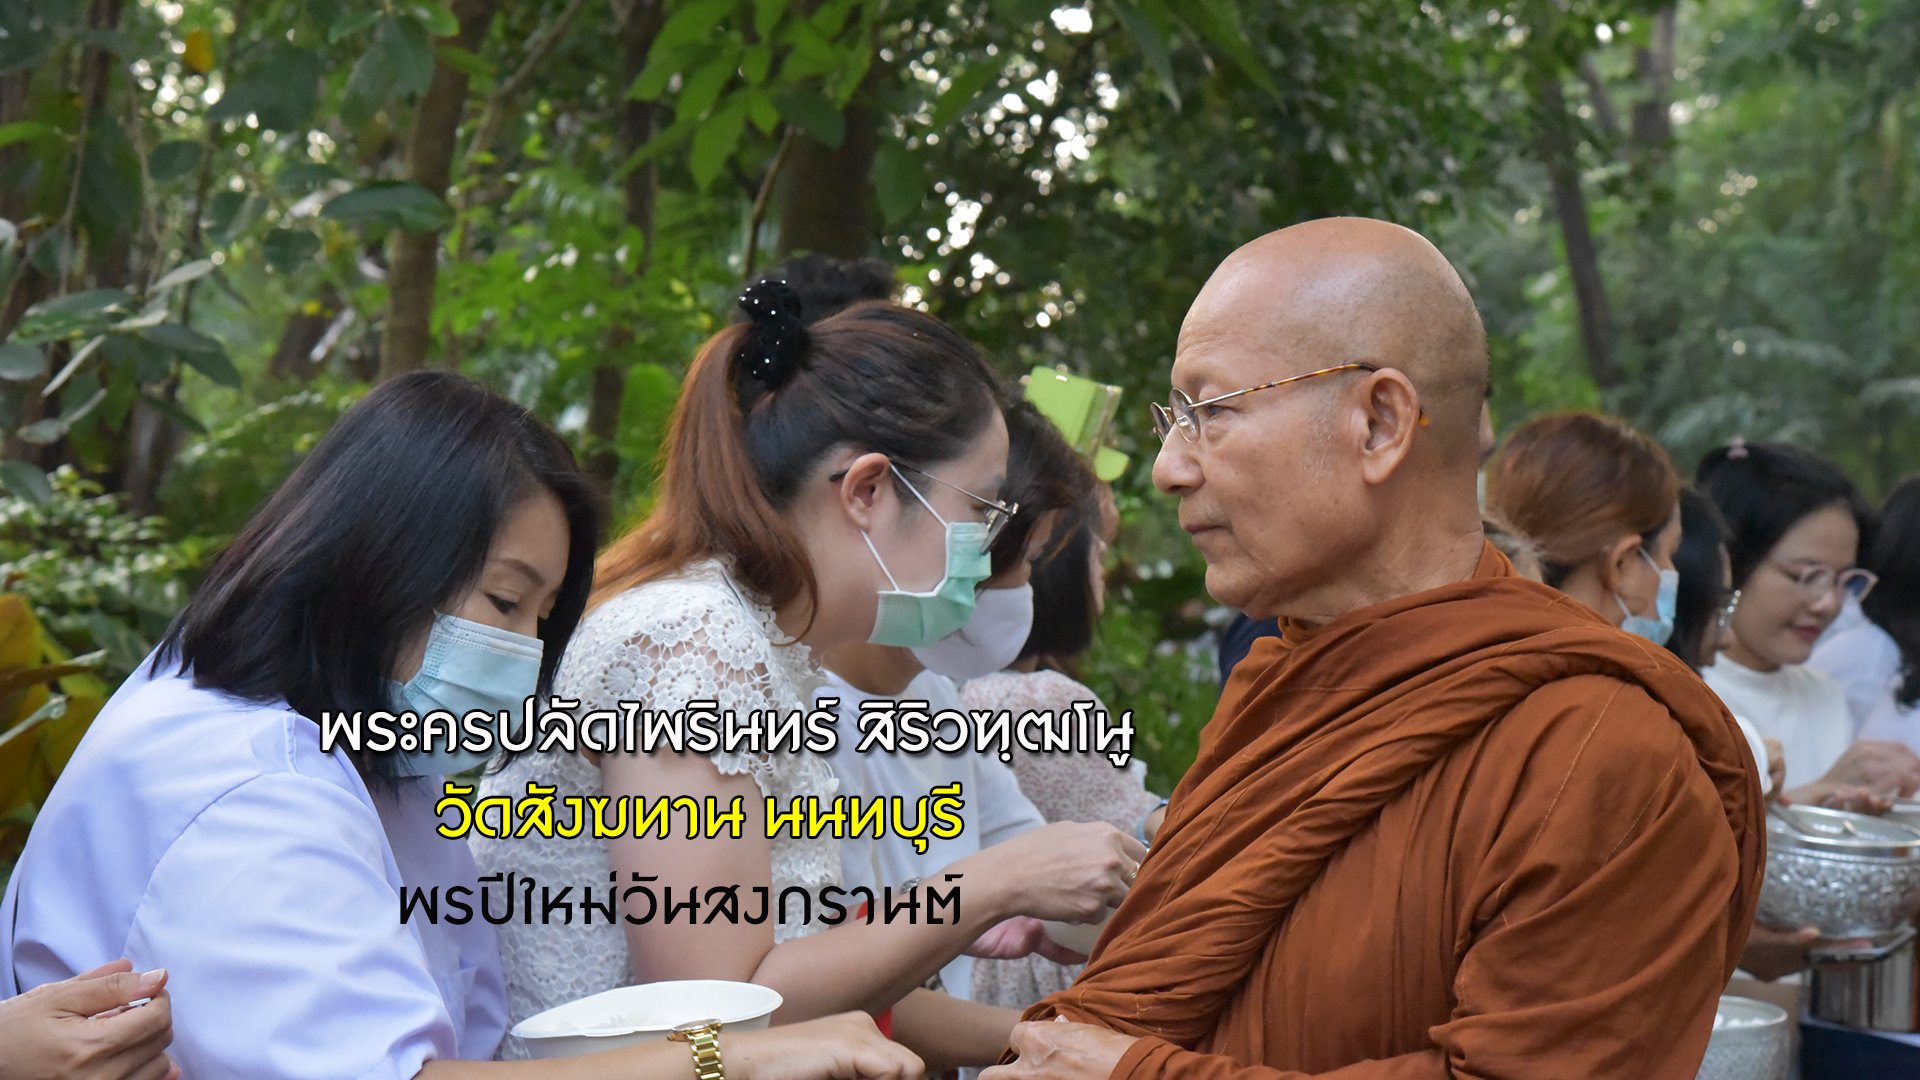 รับพรปีใหม่ไทย สงกรานต์ 2564พระครูปลัดไพรินทร์ สิริวฑฺฒโน เจ้าอาวาสวัดสังฆทาน สาธุ